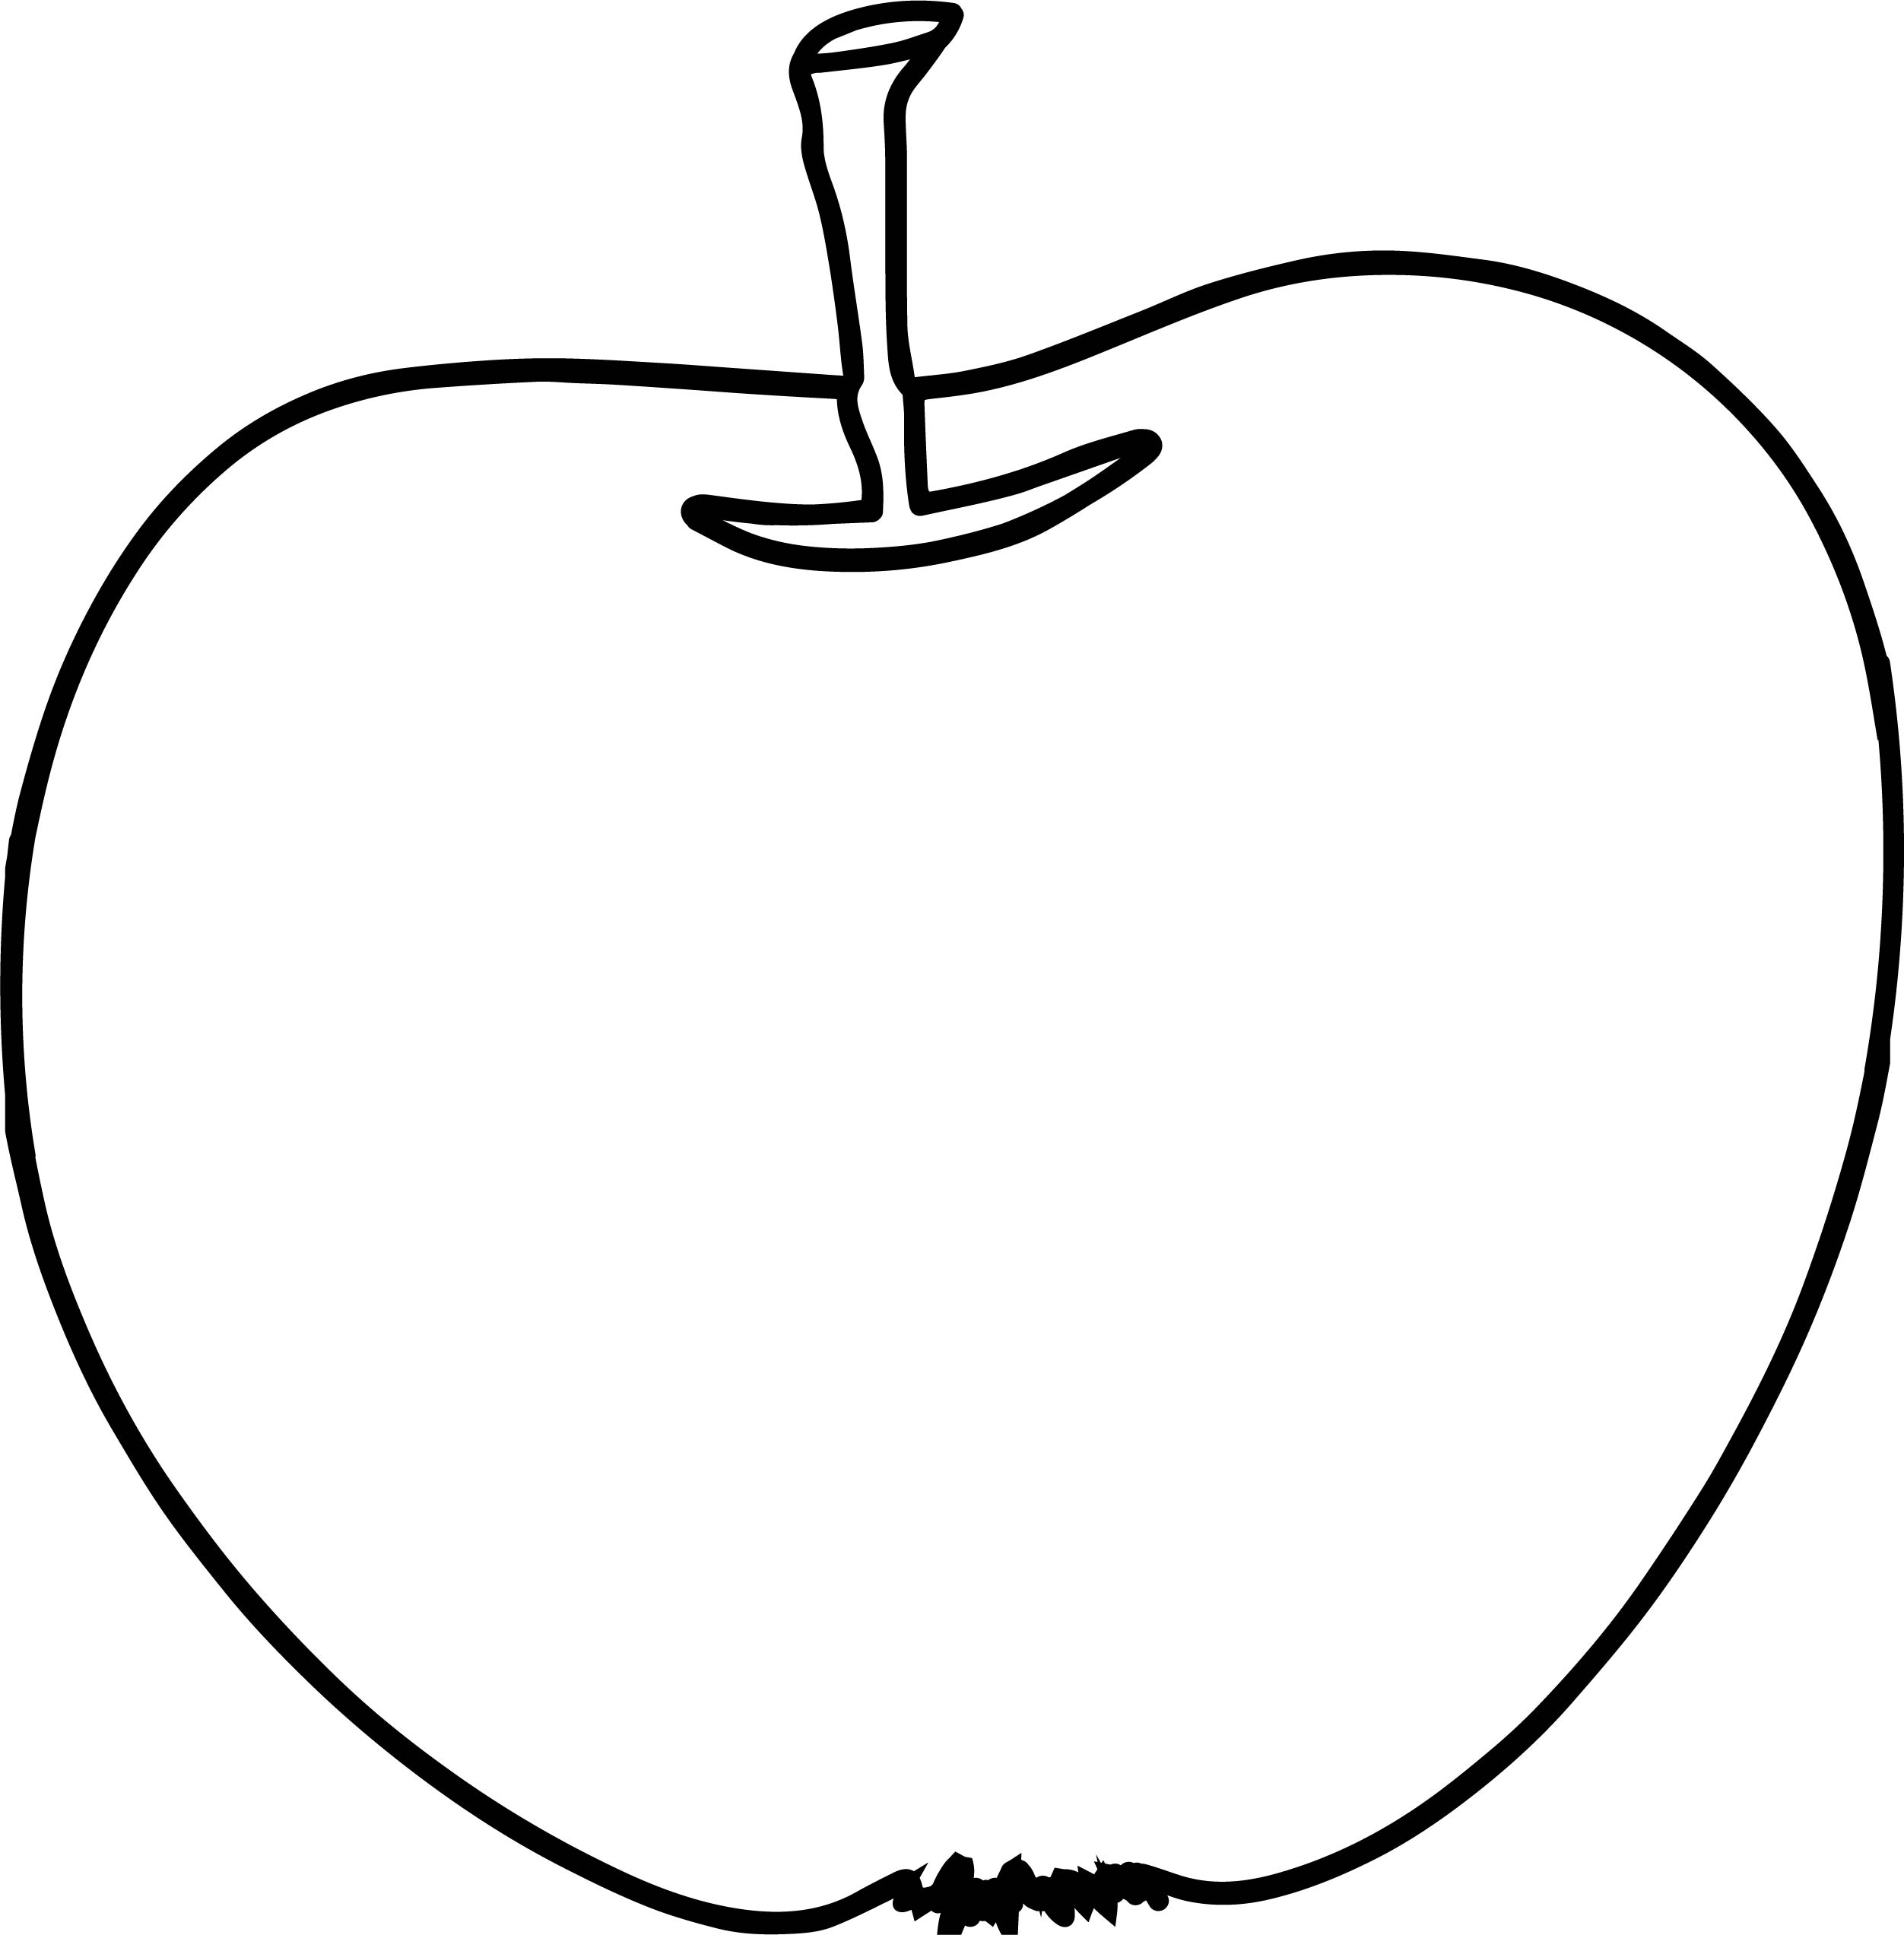 Яблоко на тарелке раскраска: Раскраски для детей и взрослых хорошего качестваРаскраска виноград и яблоки в тарелке